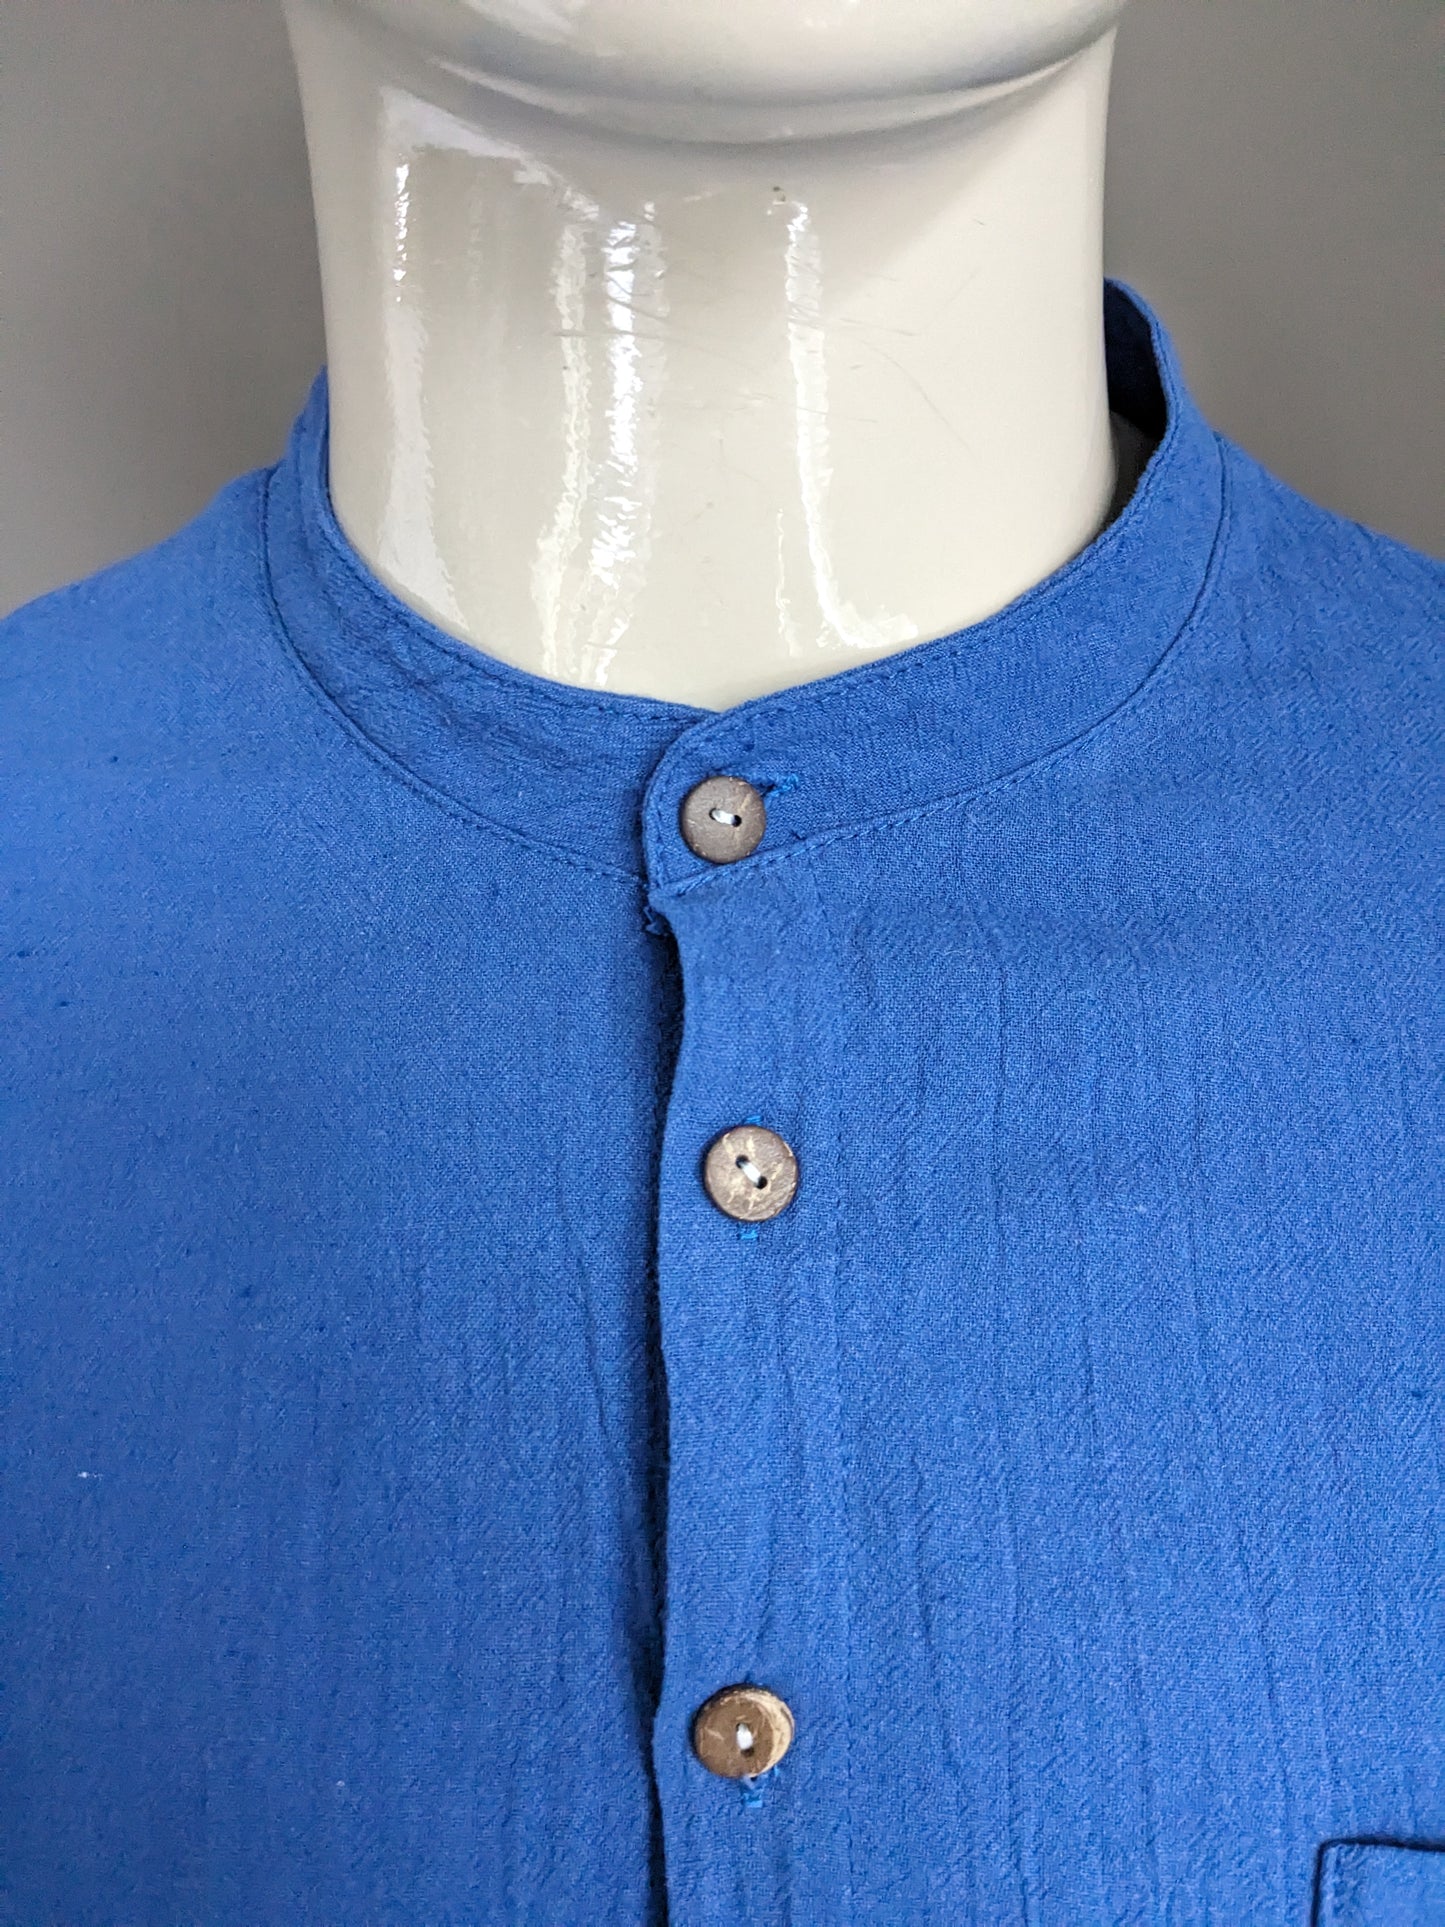 Chemise vintage à manches courtes avec mao / col surélevé. Bleu. Taille M.